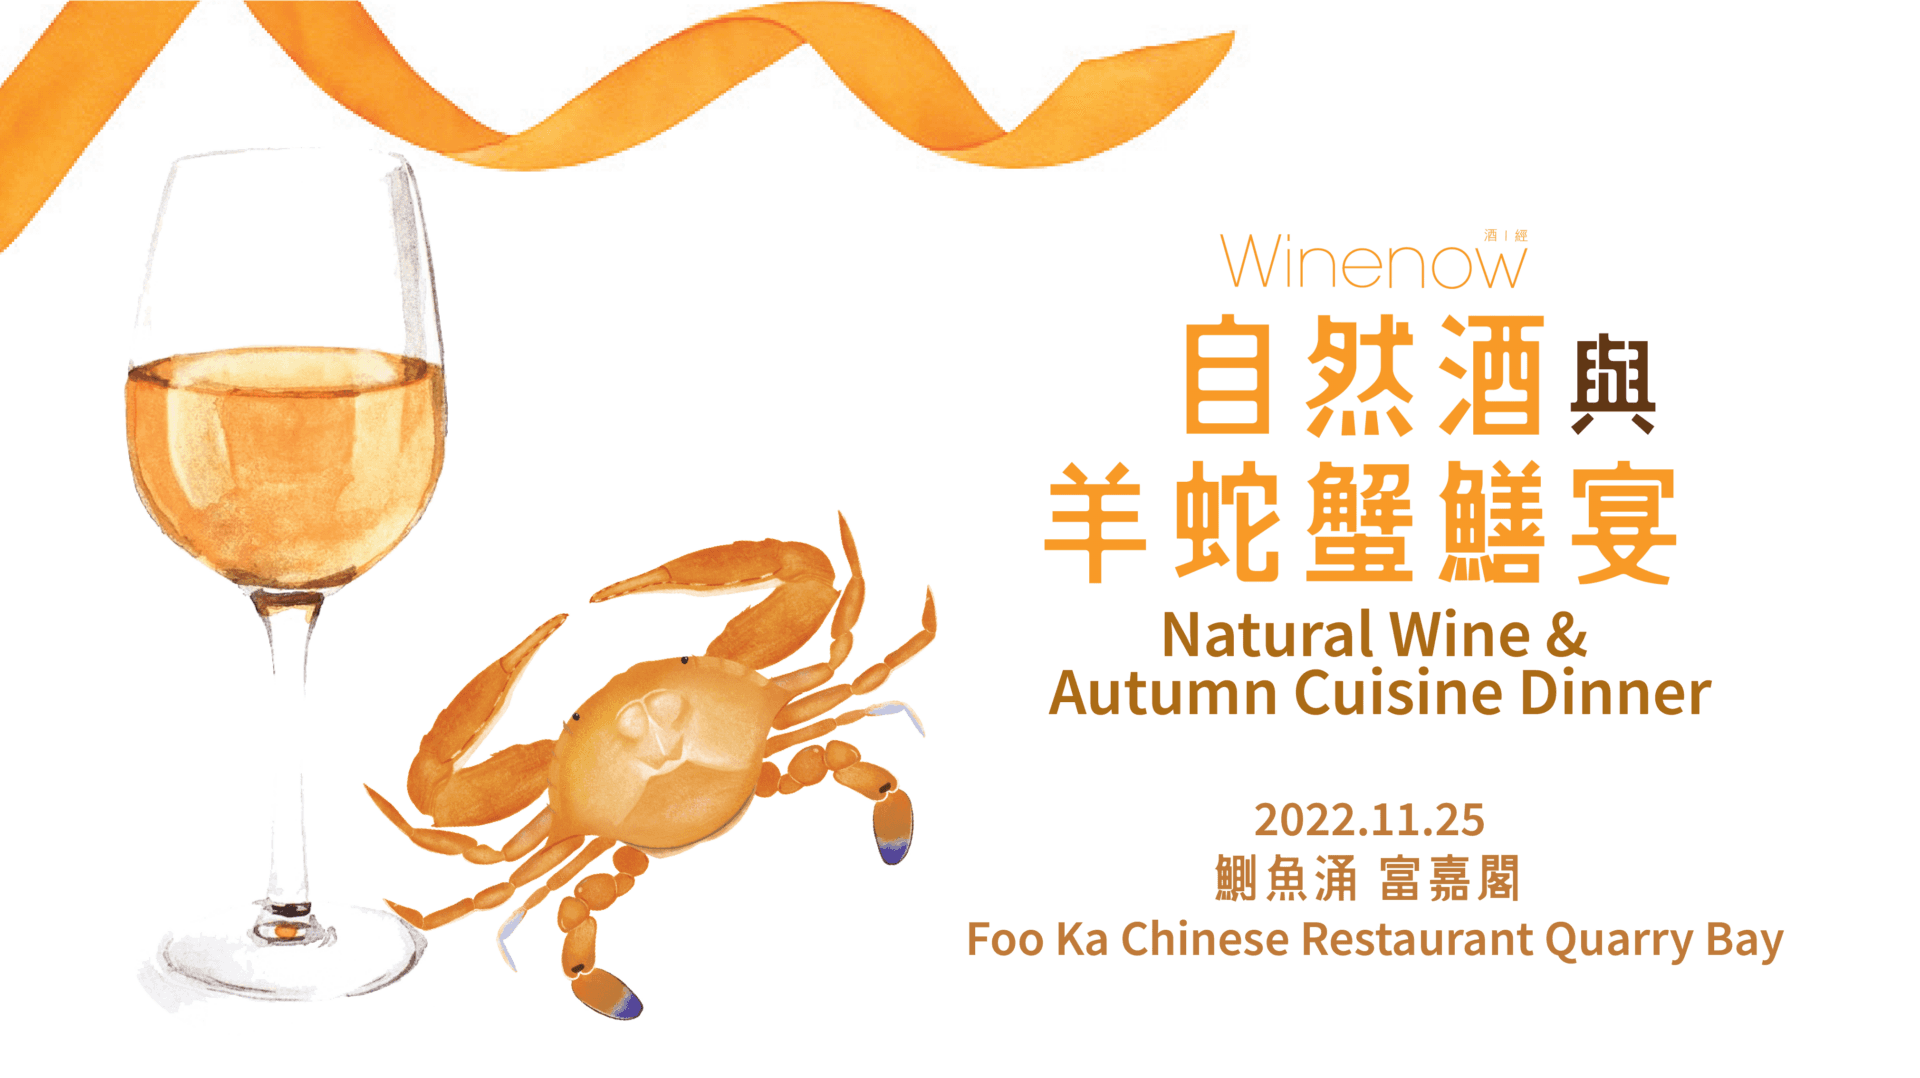 自然酒與羊蛇蟹鱔宴 Natural Wine & Autumn Cuisine Dinner - WineNow HK